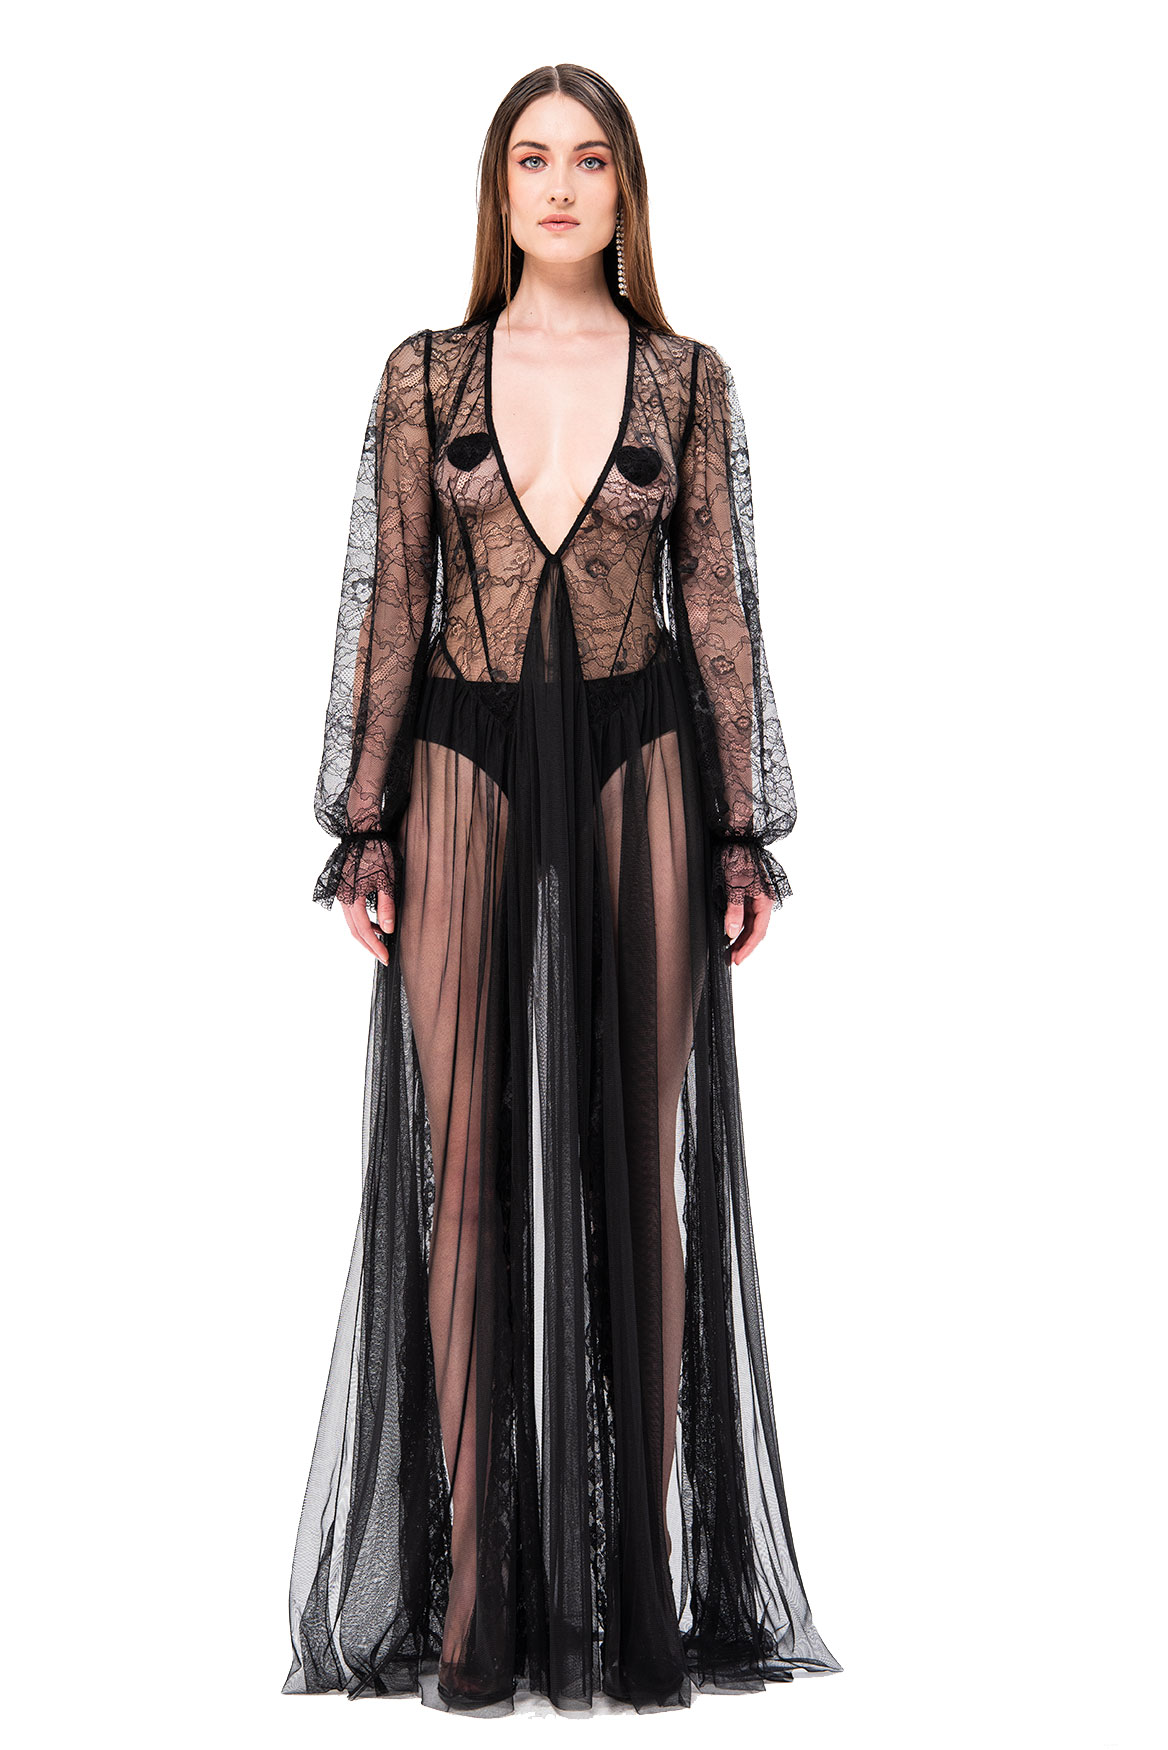 Florence Pugh's Black Rodarte Sheer Dress | POPSUGAR Fashion